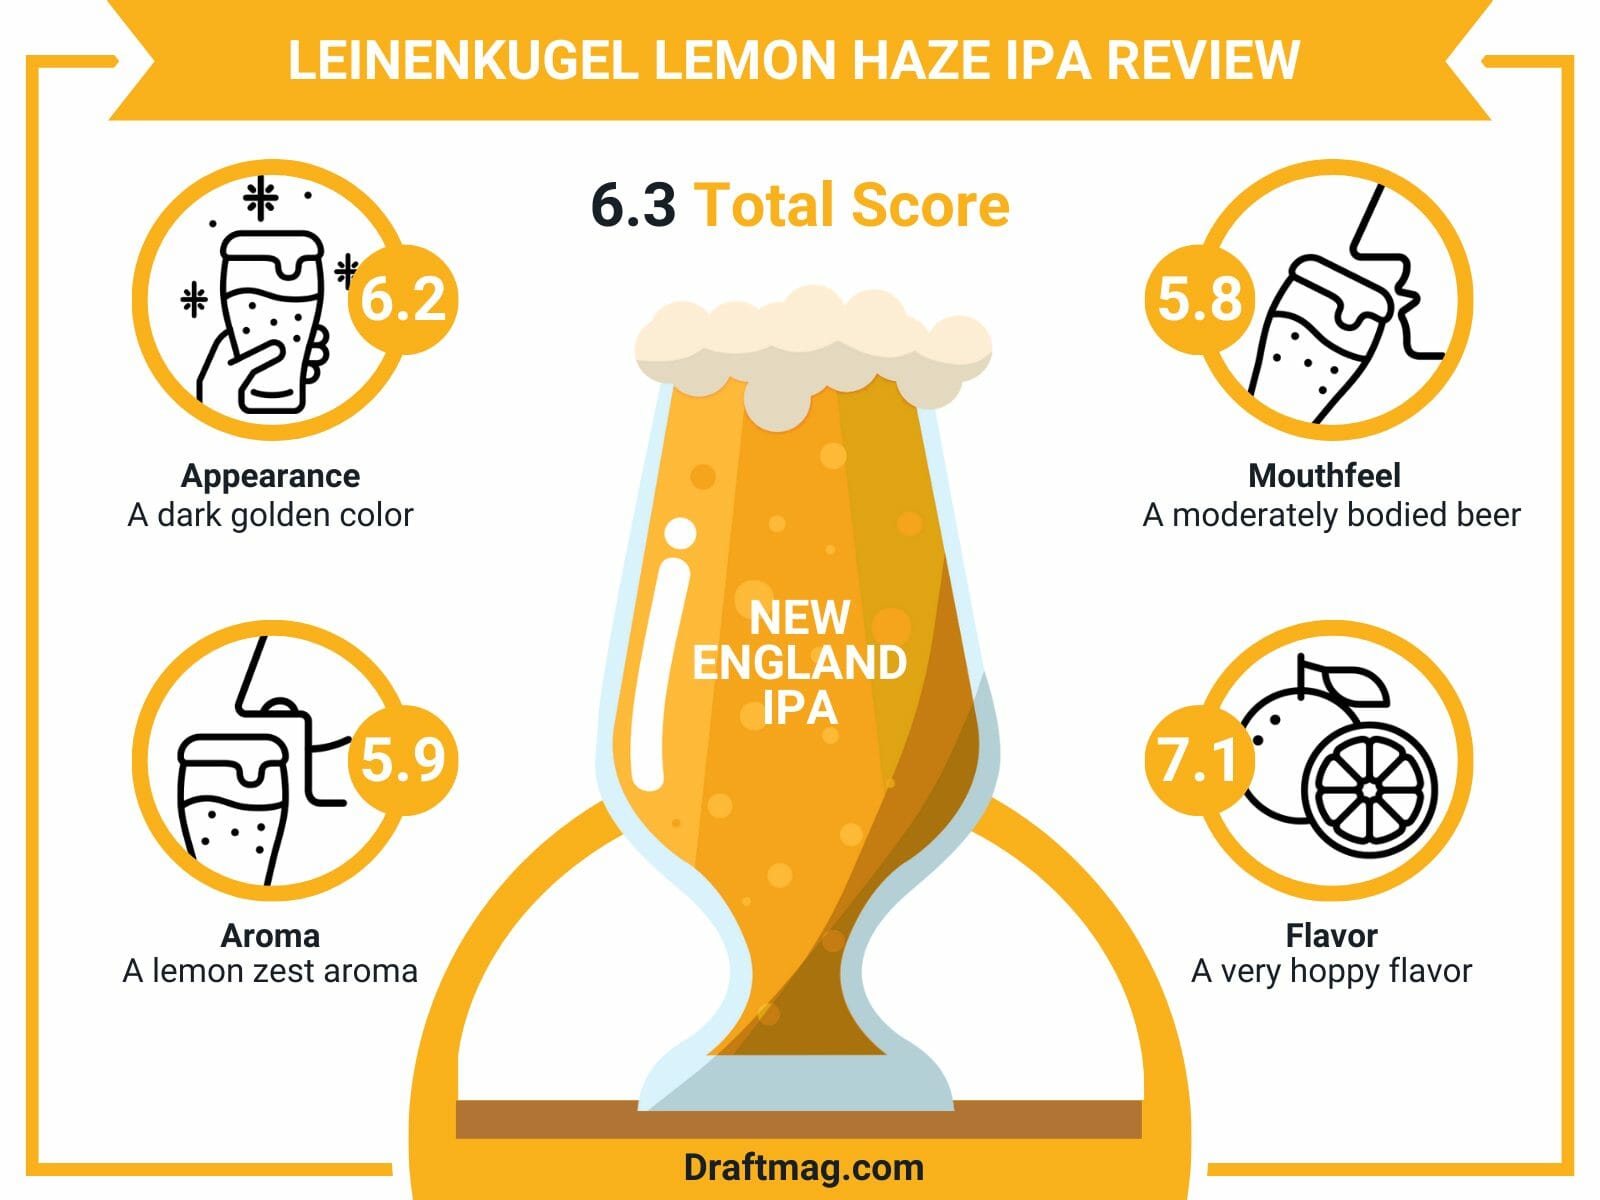 Leinenkugel Lemon Haze Review Infographic